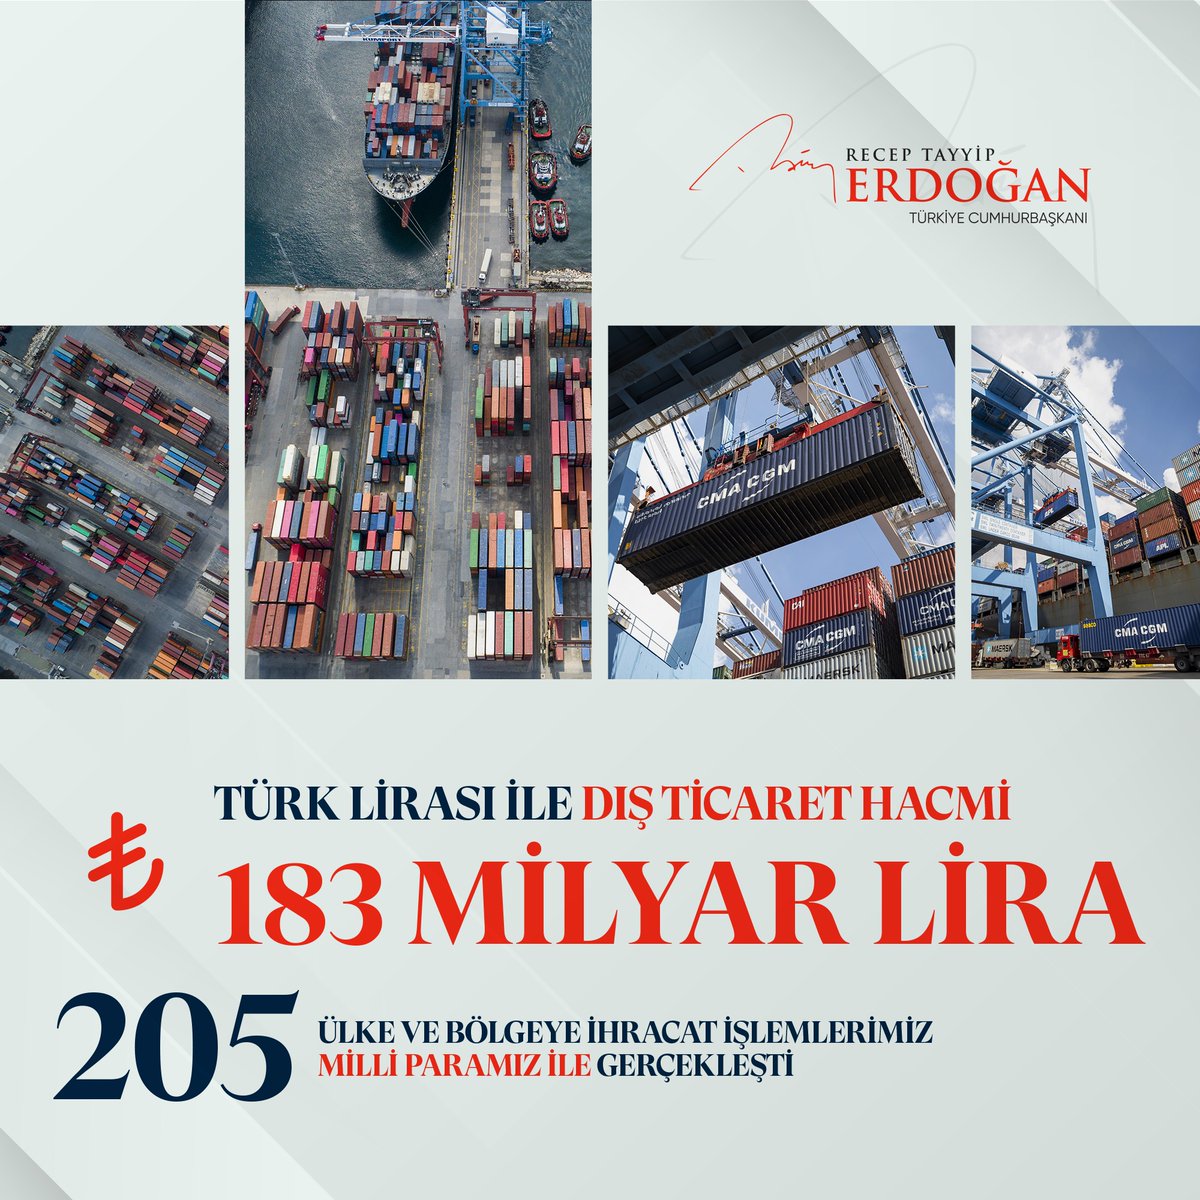 2021 yılı itibarıyla 205 ülke ve bölgeye ihracat işlemlerimizi millî paramız ile gerçekleştirdik.

Türk Lirası ile yaptığımız dış ticaret hacmi 183 milyar liraya ulaştı.